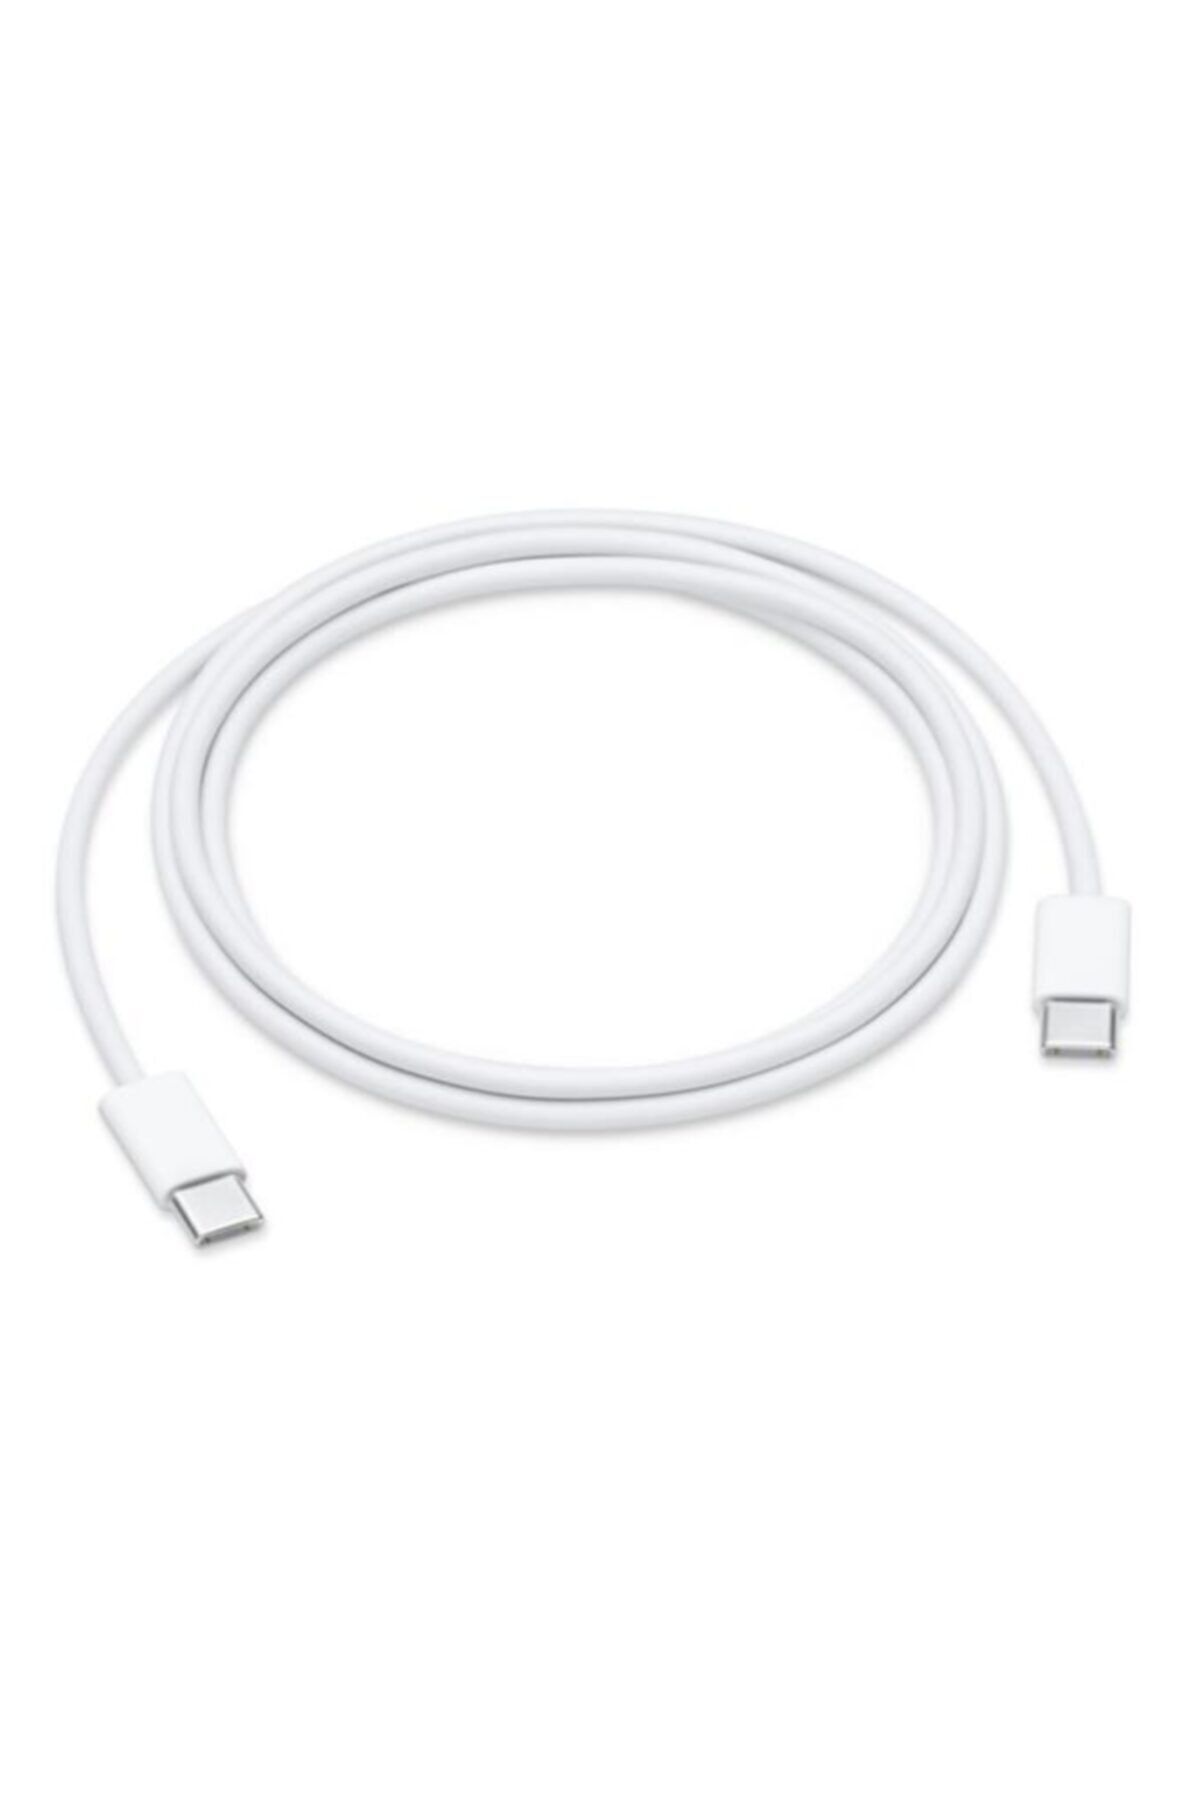 Apple USB-C Şarj Kablosu 1m (Apple Türkiye Garantili) MUF72ZM/A